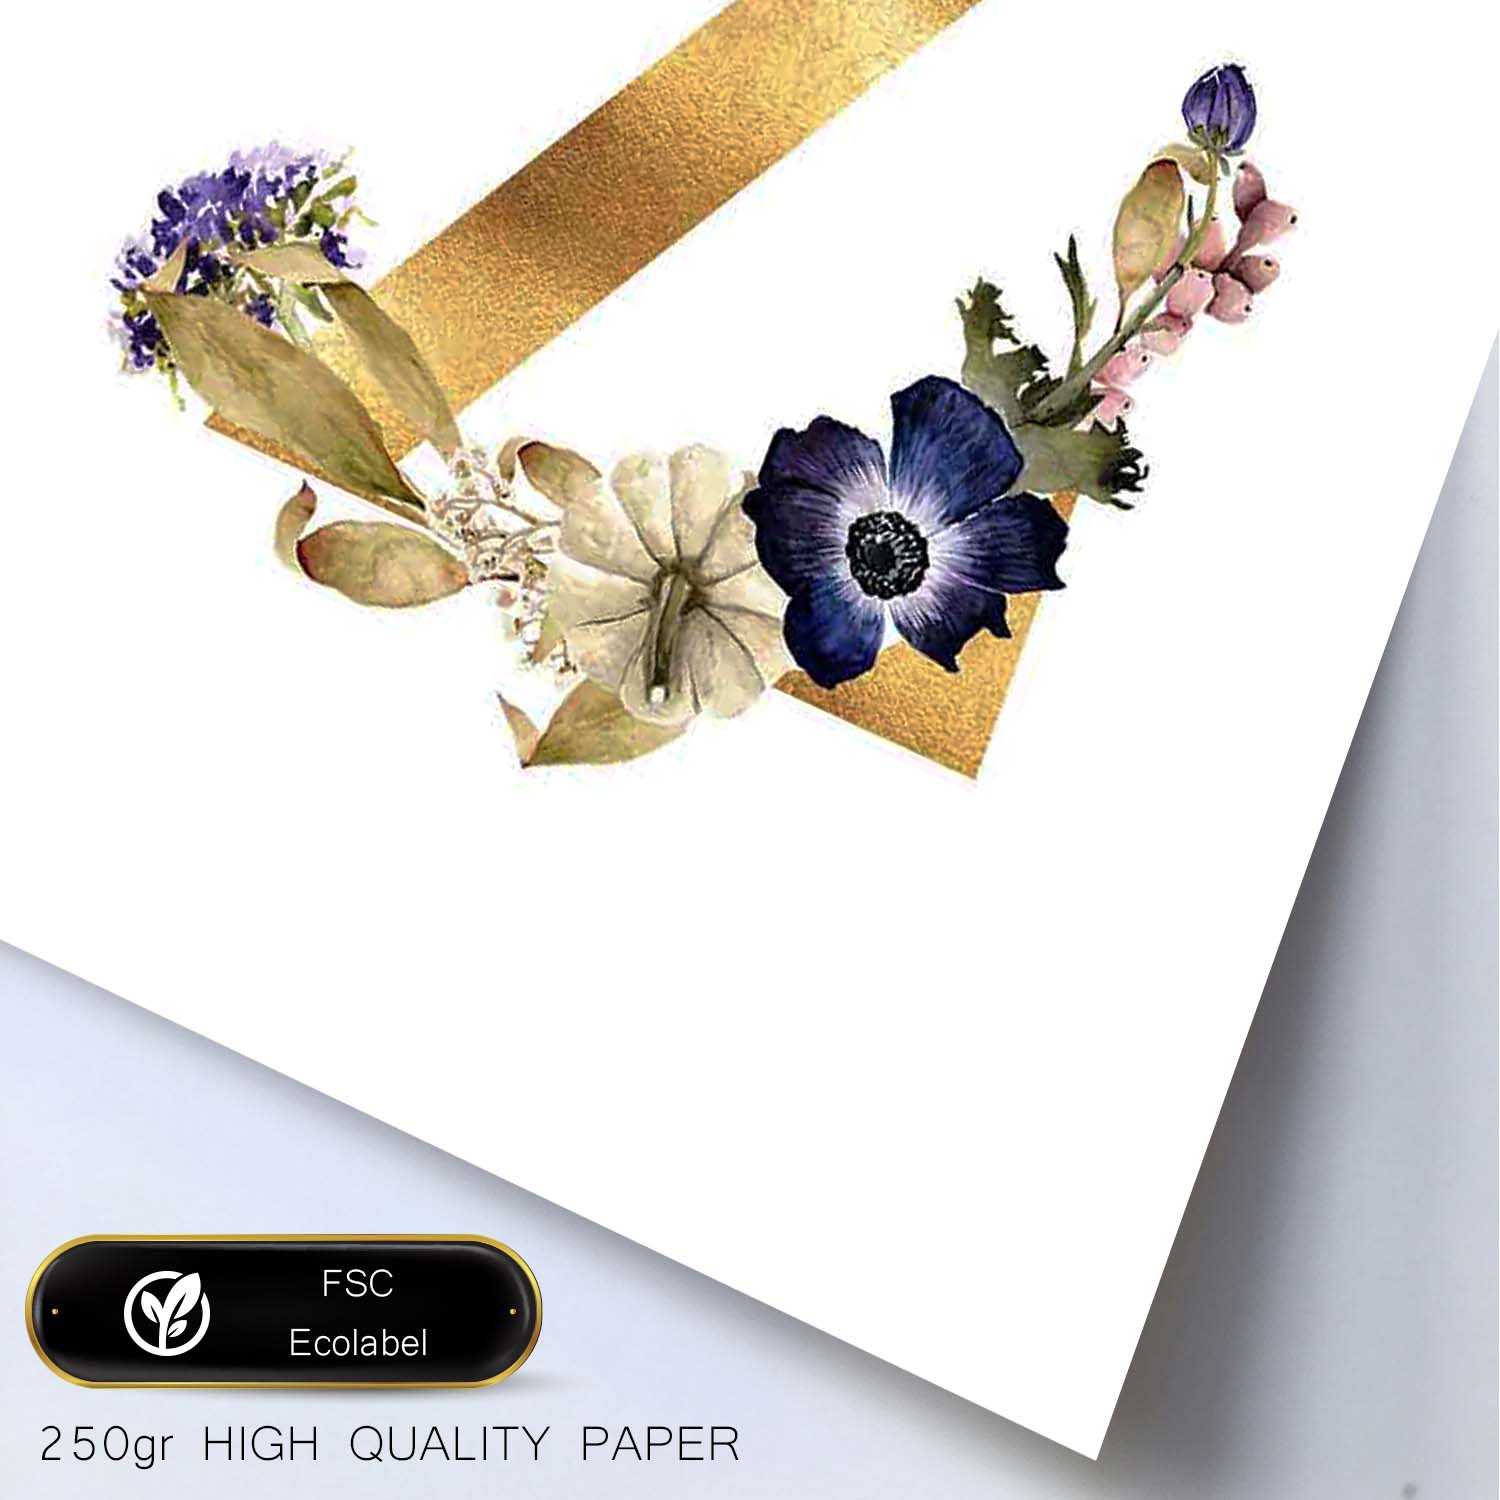 Poster de letra Z. Lámina estilo Dorado Floral con imágenes del alfabeto.-Artwork-Nacnic-Nacnic Estudio SL